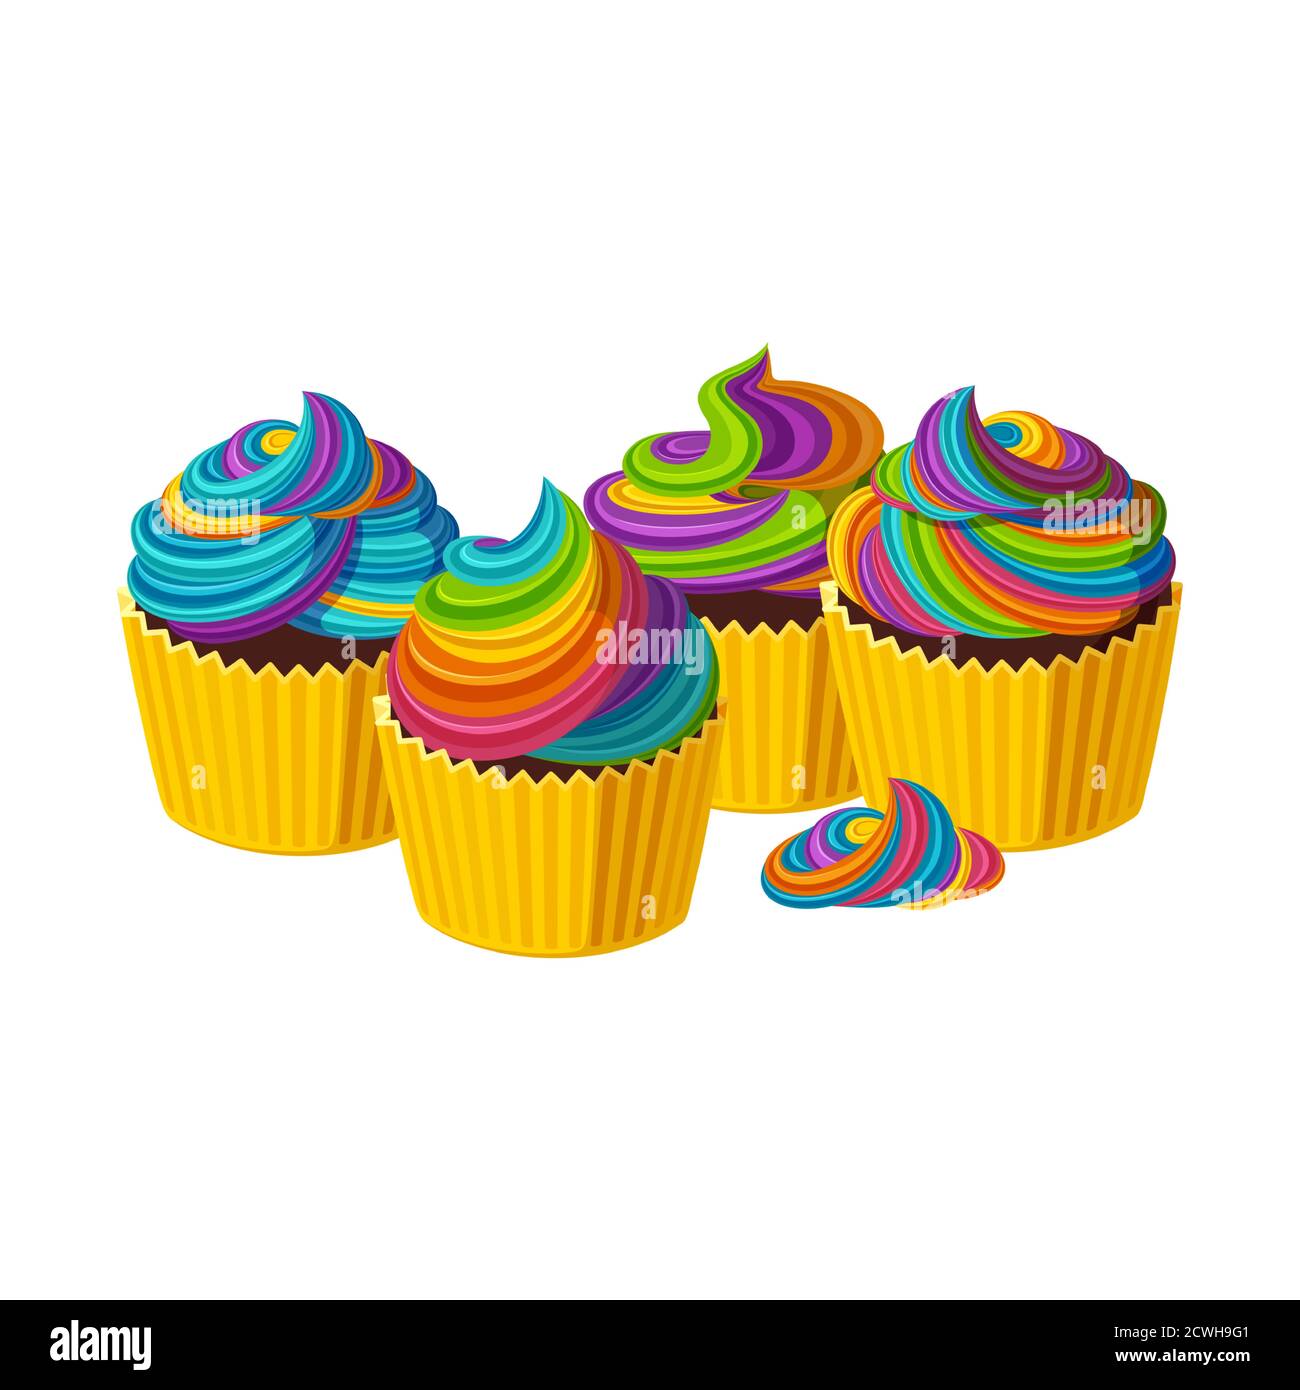 Cupcakes arc-en-ciel avec glaçage en spirale. De savoureux gâteaux à la crème colorée. Illustration vectorielle dans un joli style de dessin animé Illustration de Vecteur